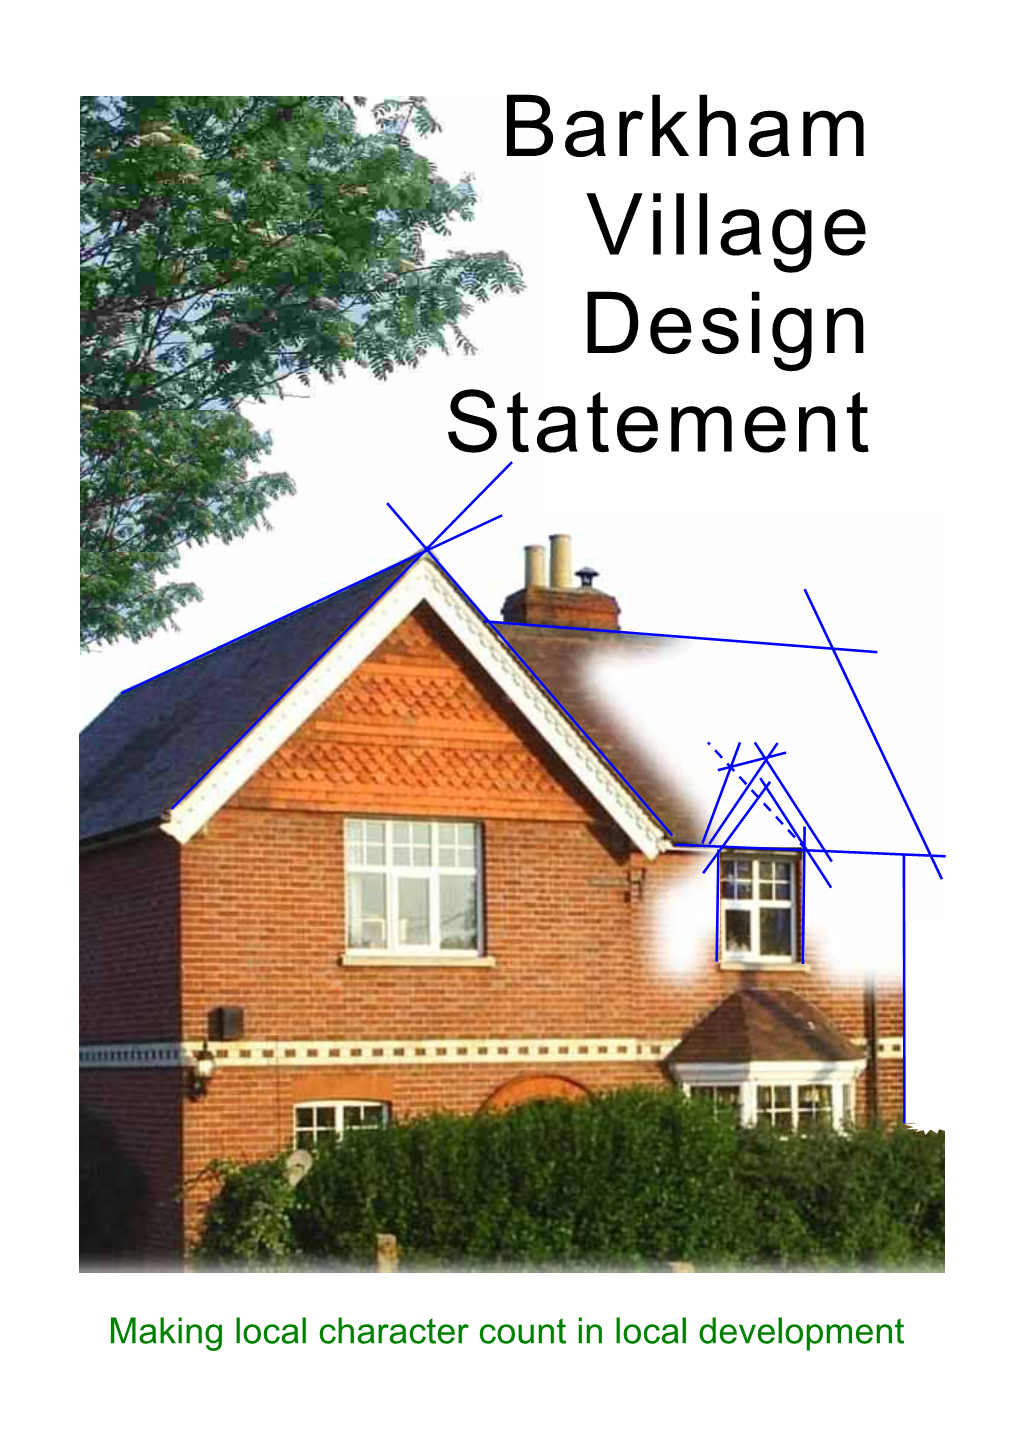 Barkham Village Design Statement – Notification of Amendments (August 2009)